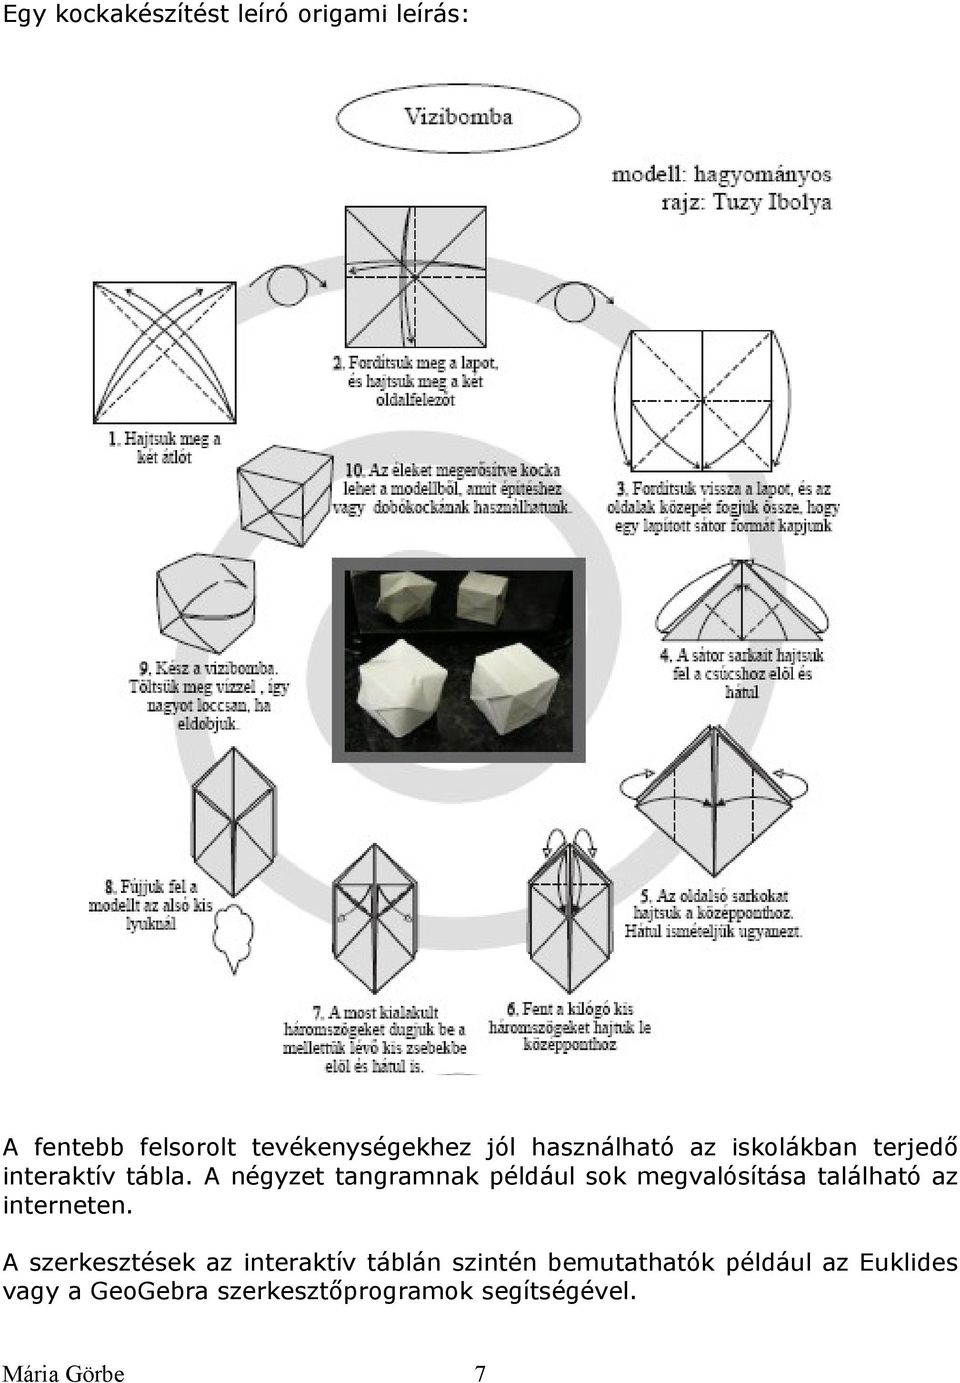 A négyzet tangramnak például sok megvalósítása található az interneten.